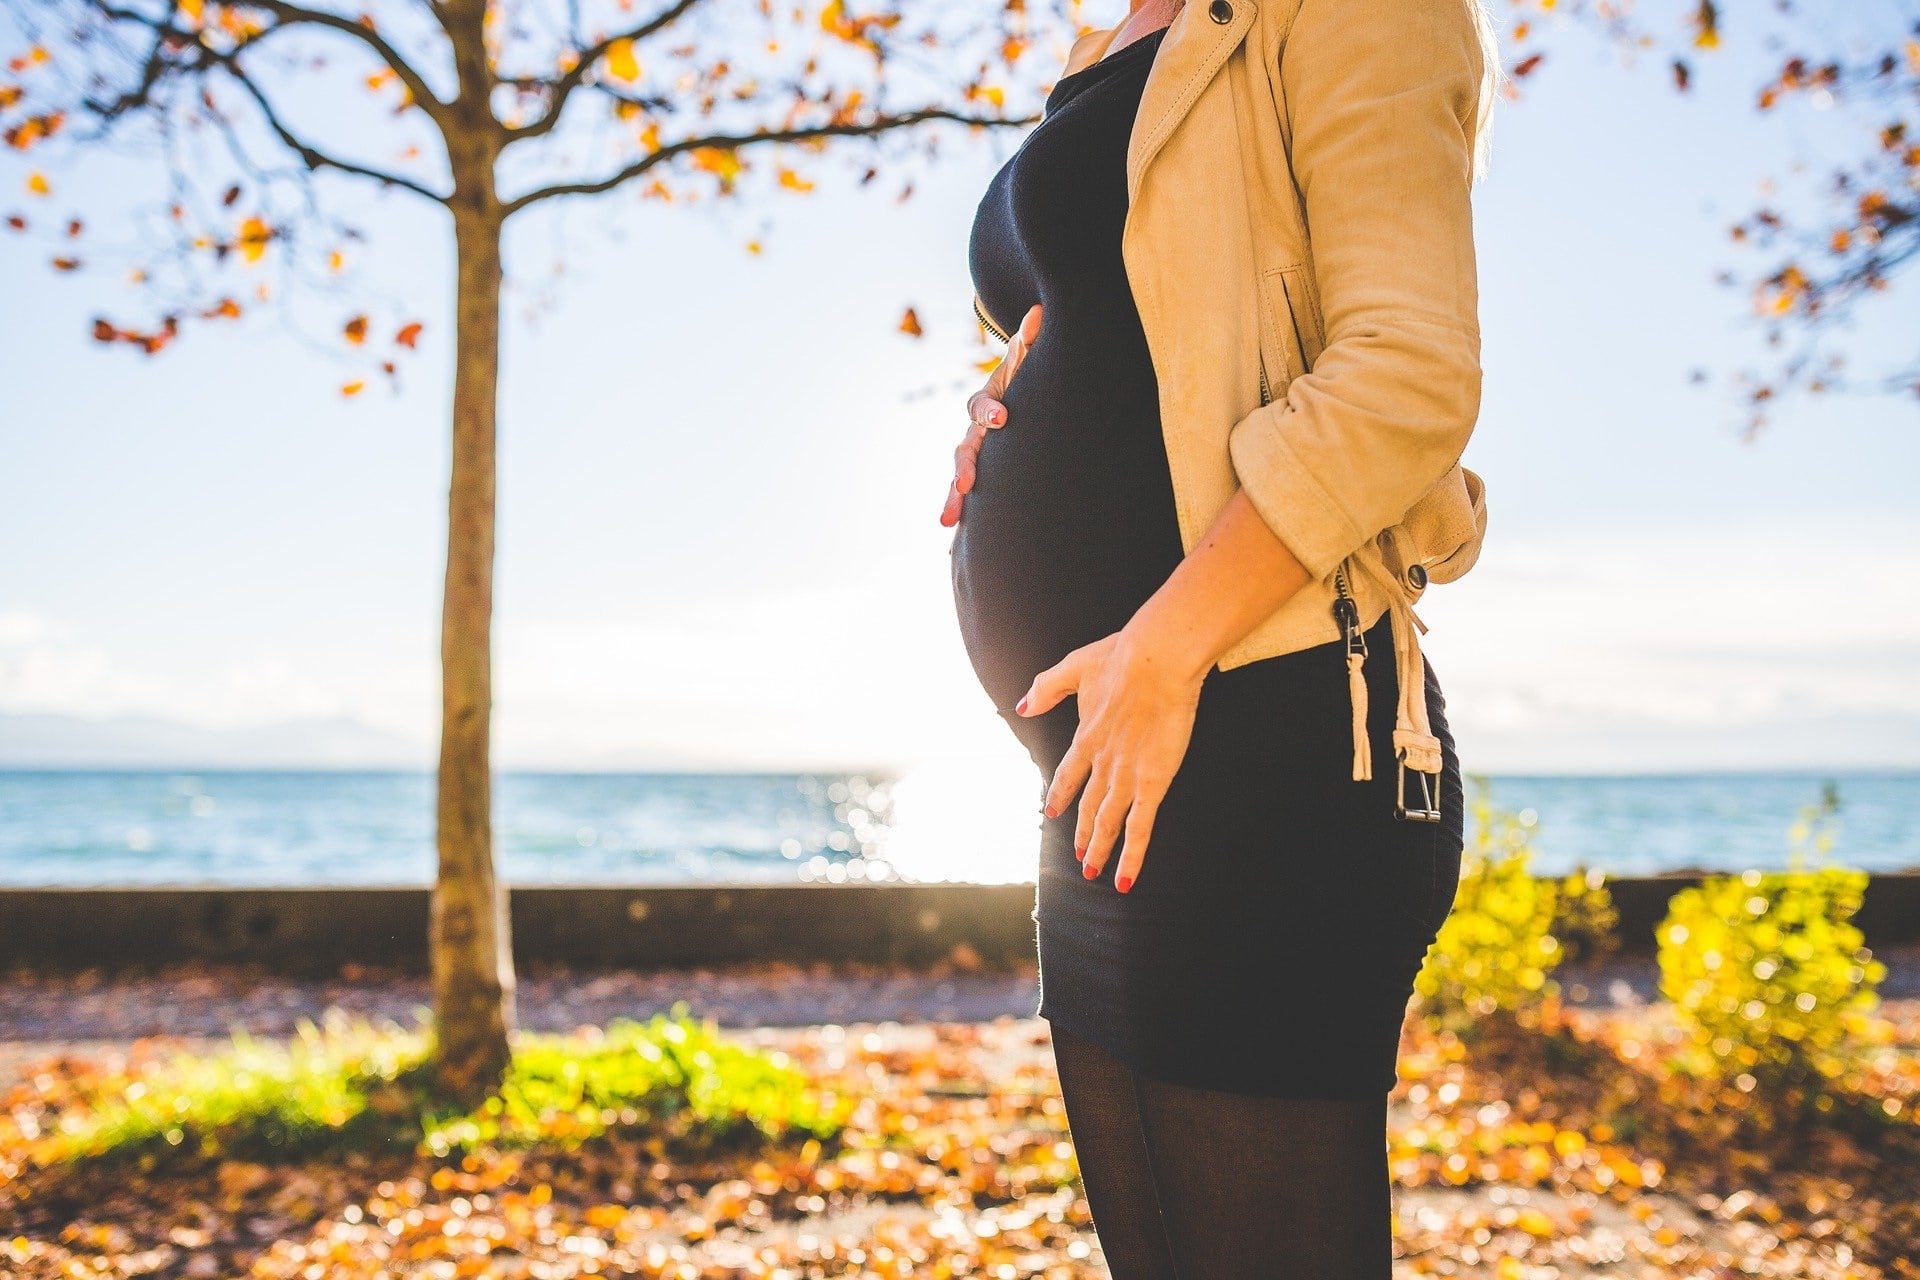 Leihmutter aus Kanada: Wie war es, das Baby abzugeben?